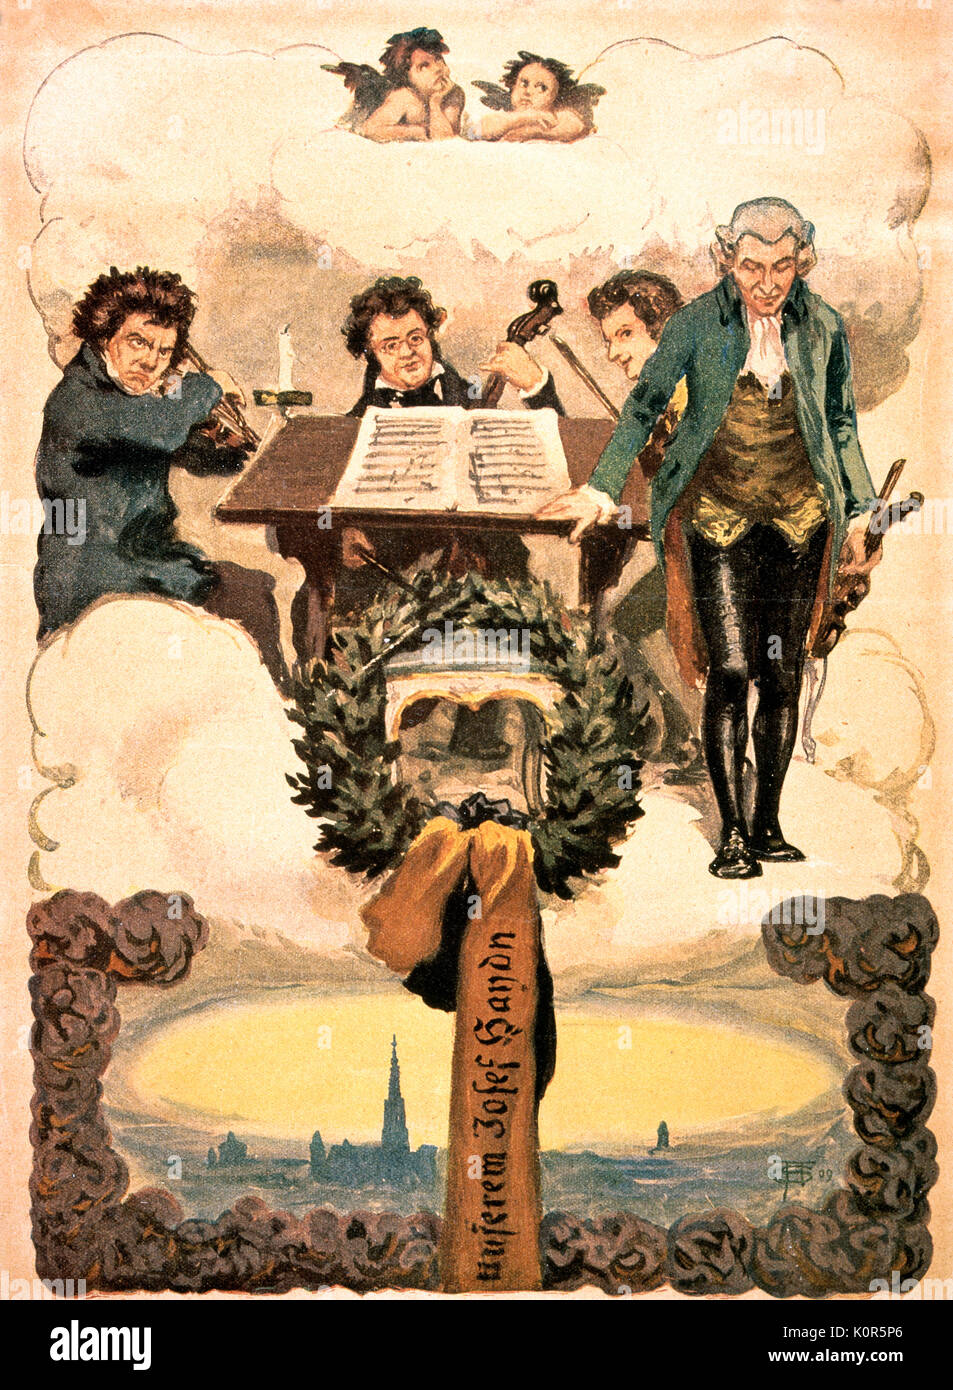 Haydn & Quartetto celeste. Il compositore austriaco, 31 marzo 1732 - 31 maggio 1809. Xix secolo la fantasia del quartetto in cielo con da l.a r. Ludwig van Beethoven, Franz Schubert, Wolfgan Amadeus Mozart e Josef Haydn Foto Stock